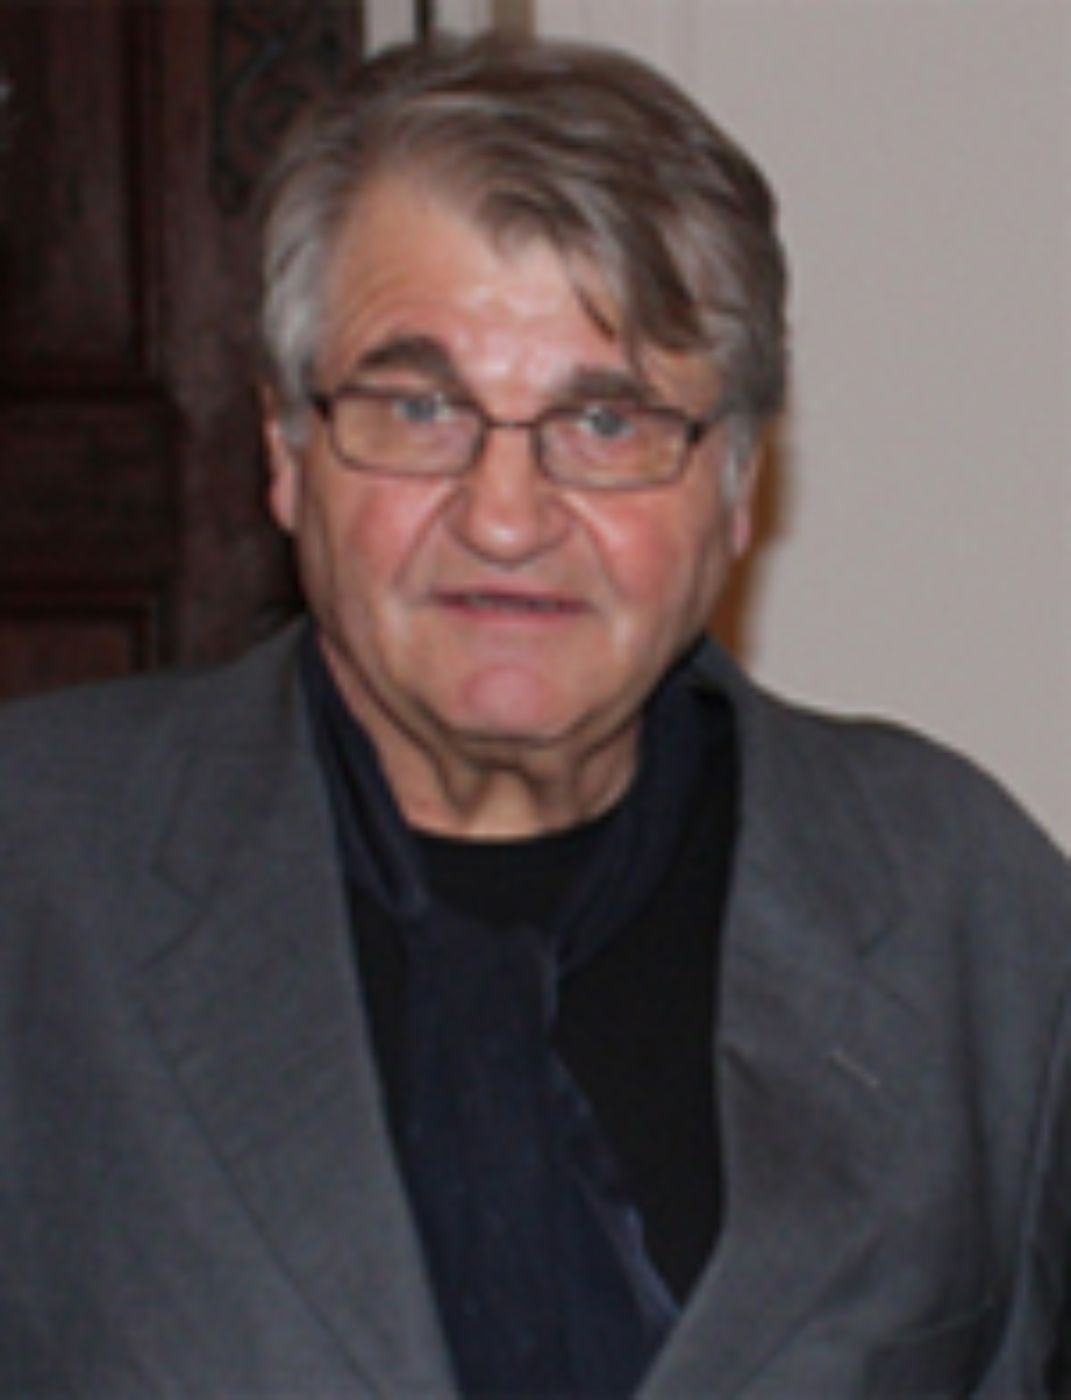 Peter Turrini